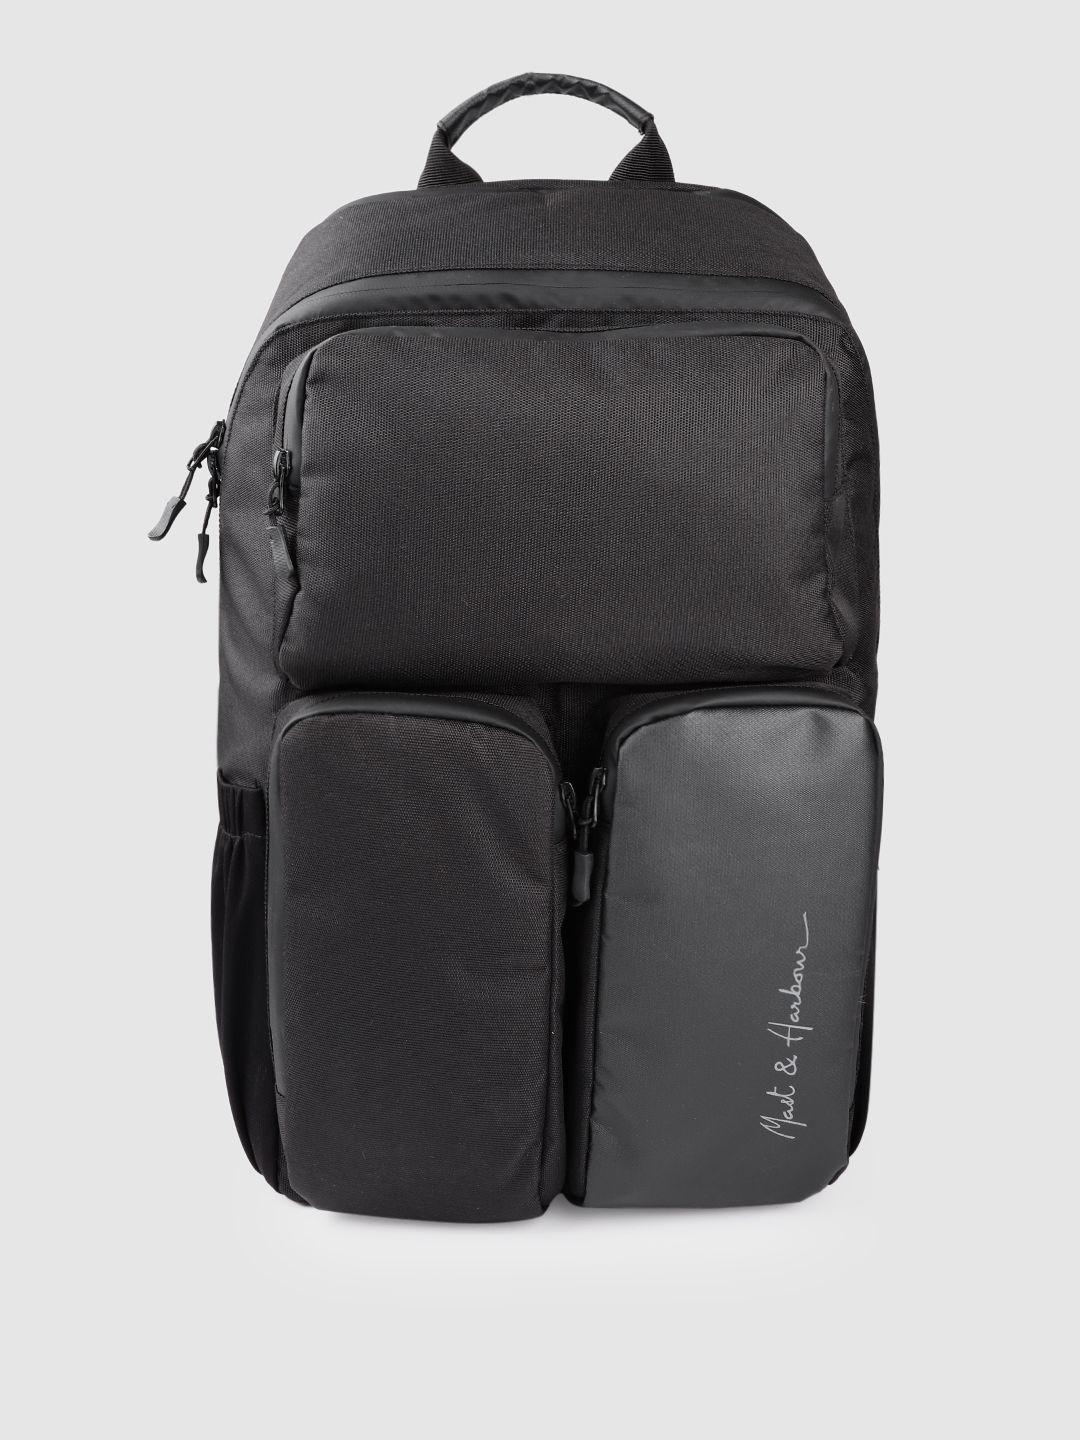 mast & harbour unisex black solid backpack 27.3 l